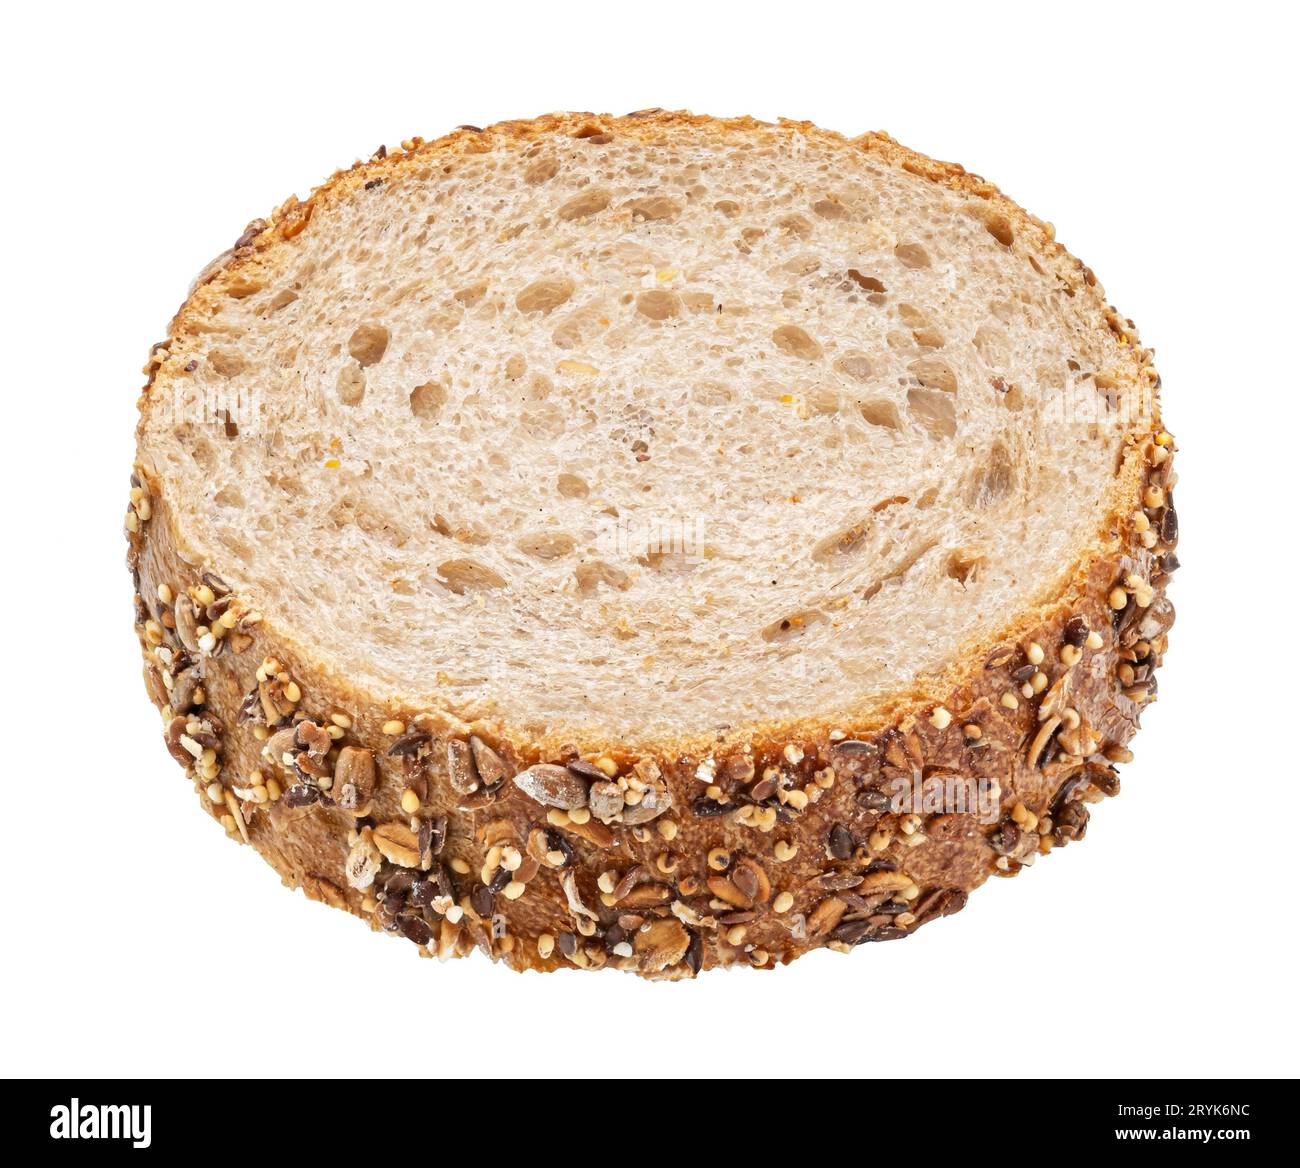 Fetta di pane integrale con avena isolata su sfondo bianco, vista dall'alto Foto Stock